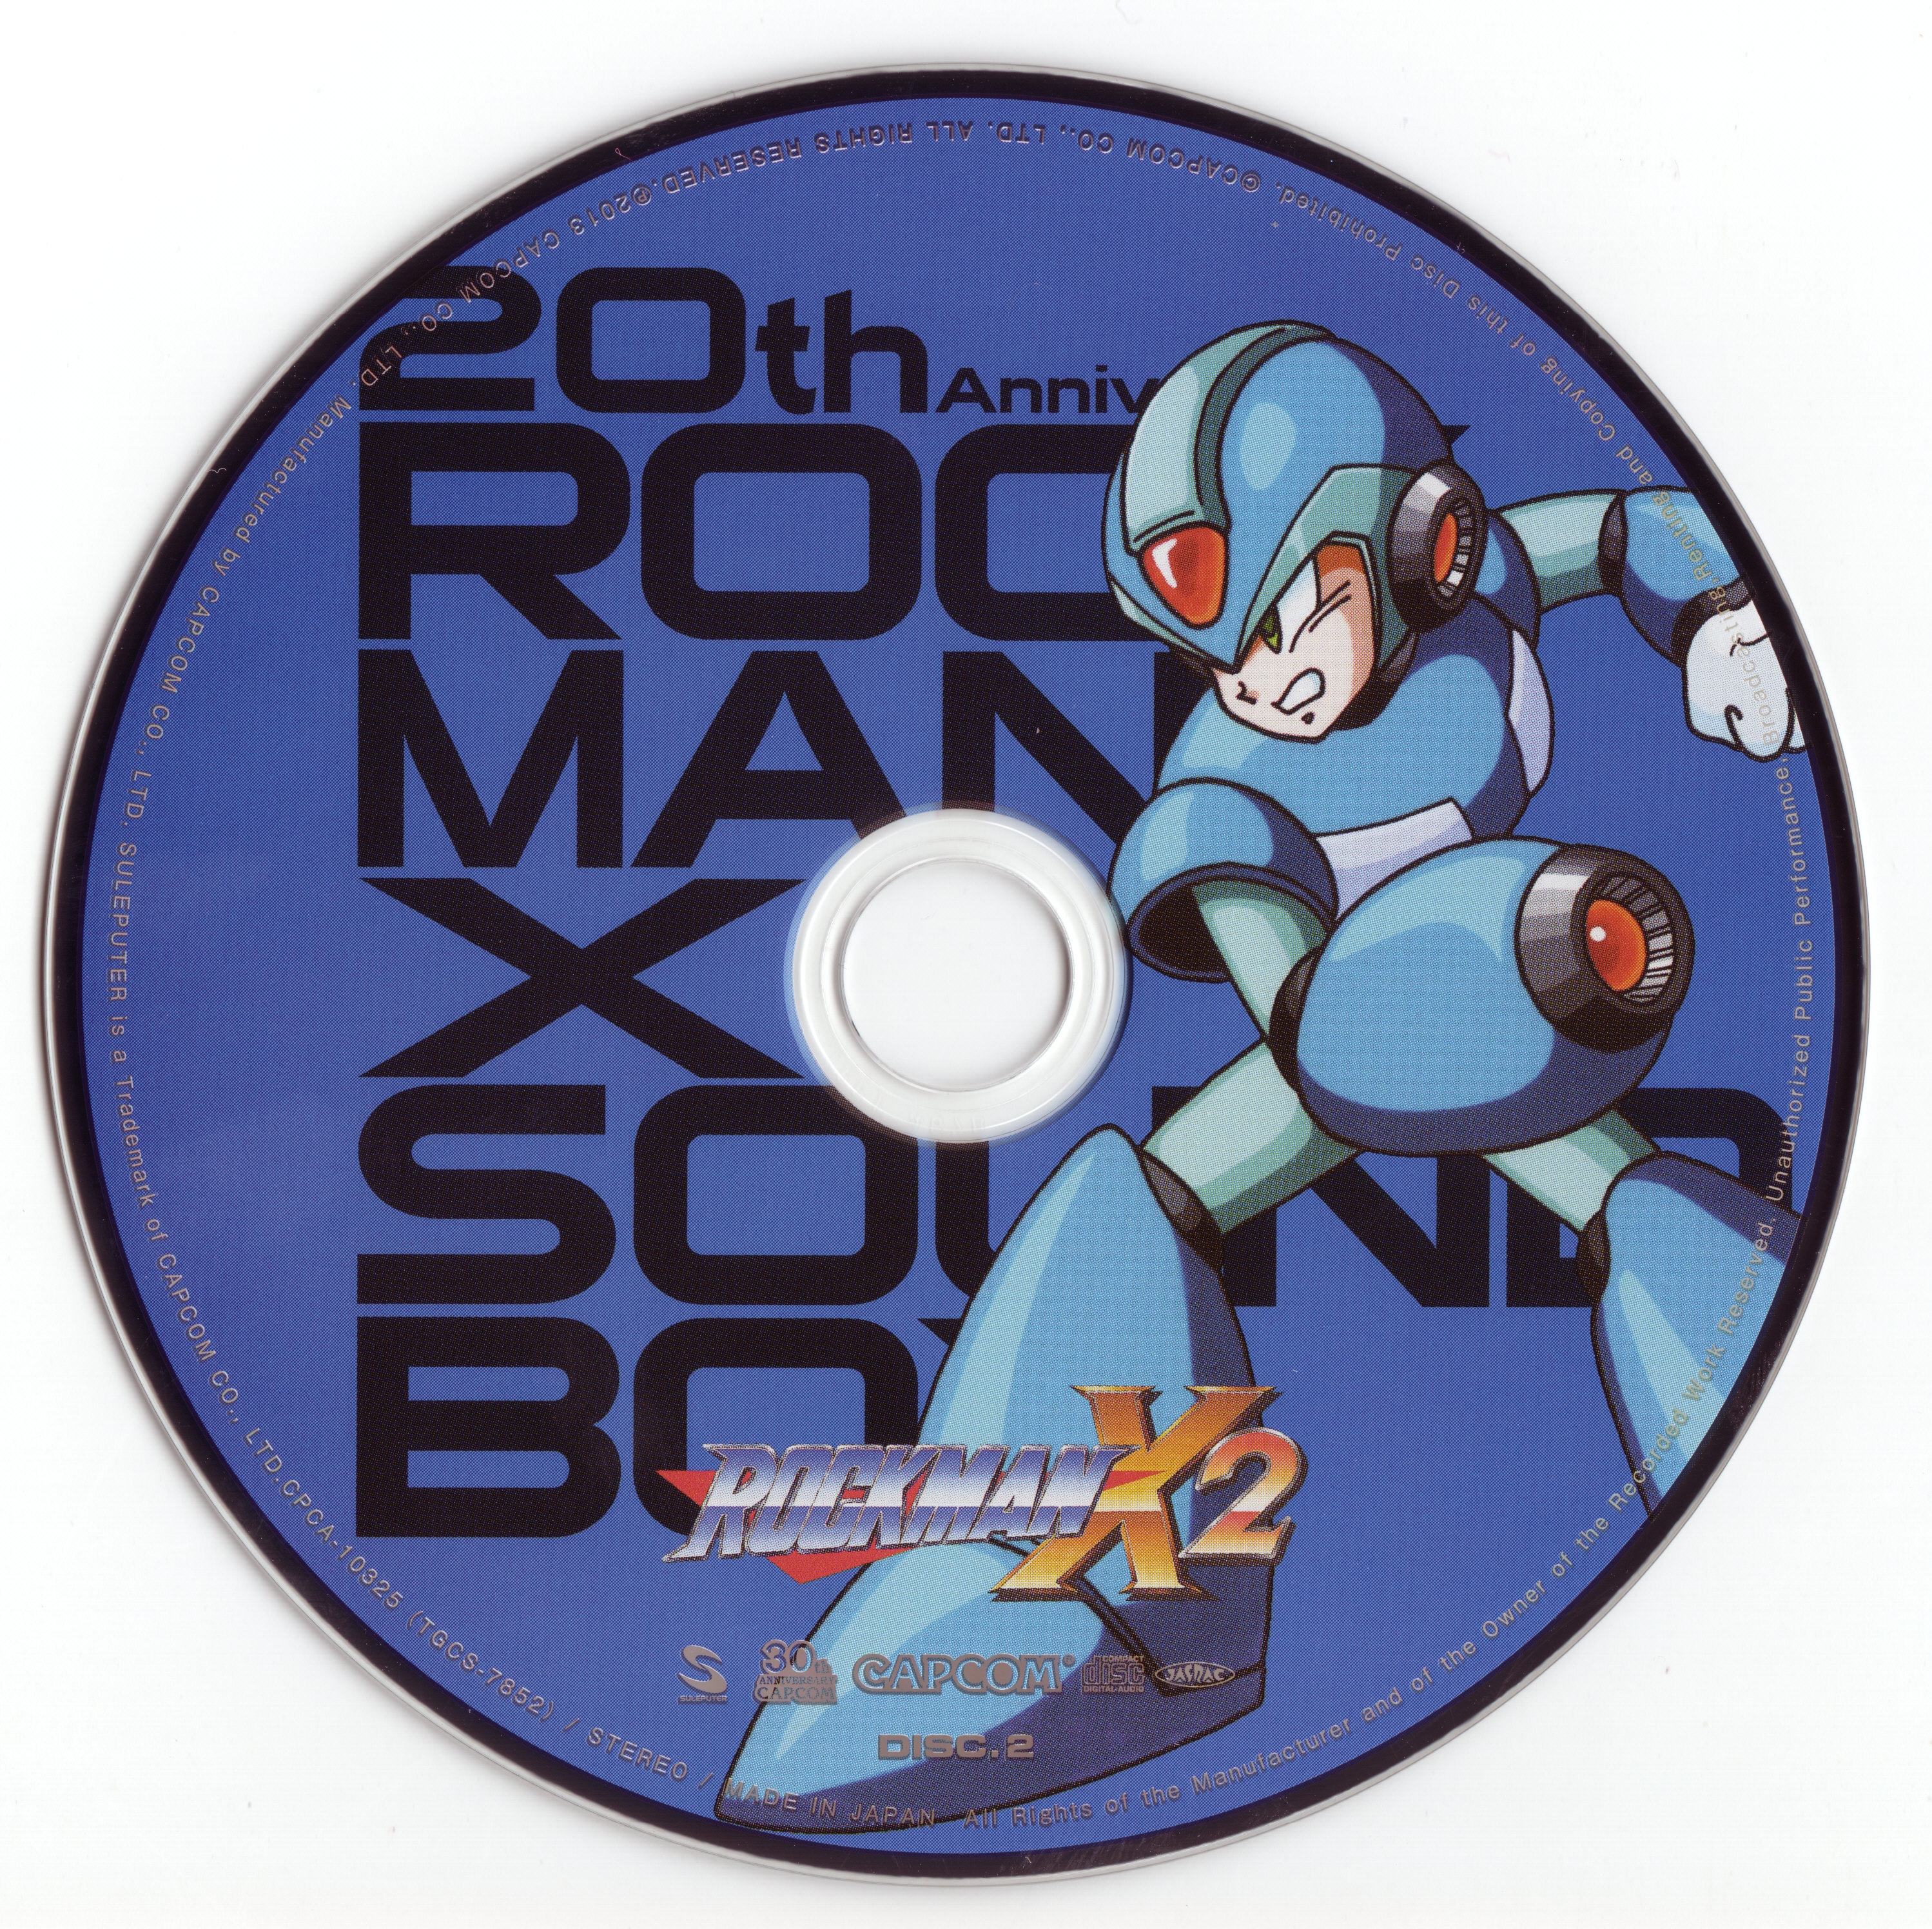 20th Anniversary ROCKMAN X SOUND BOX (2013) MP3 - Download 20th